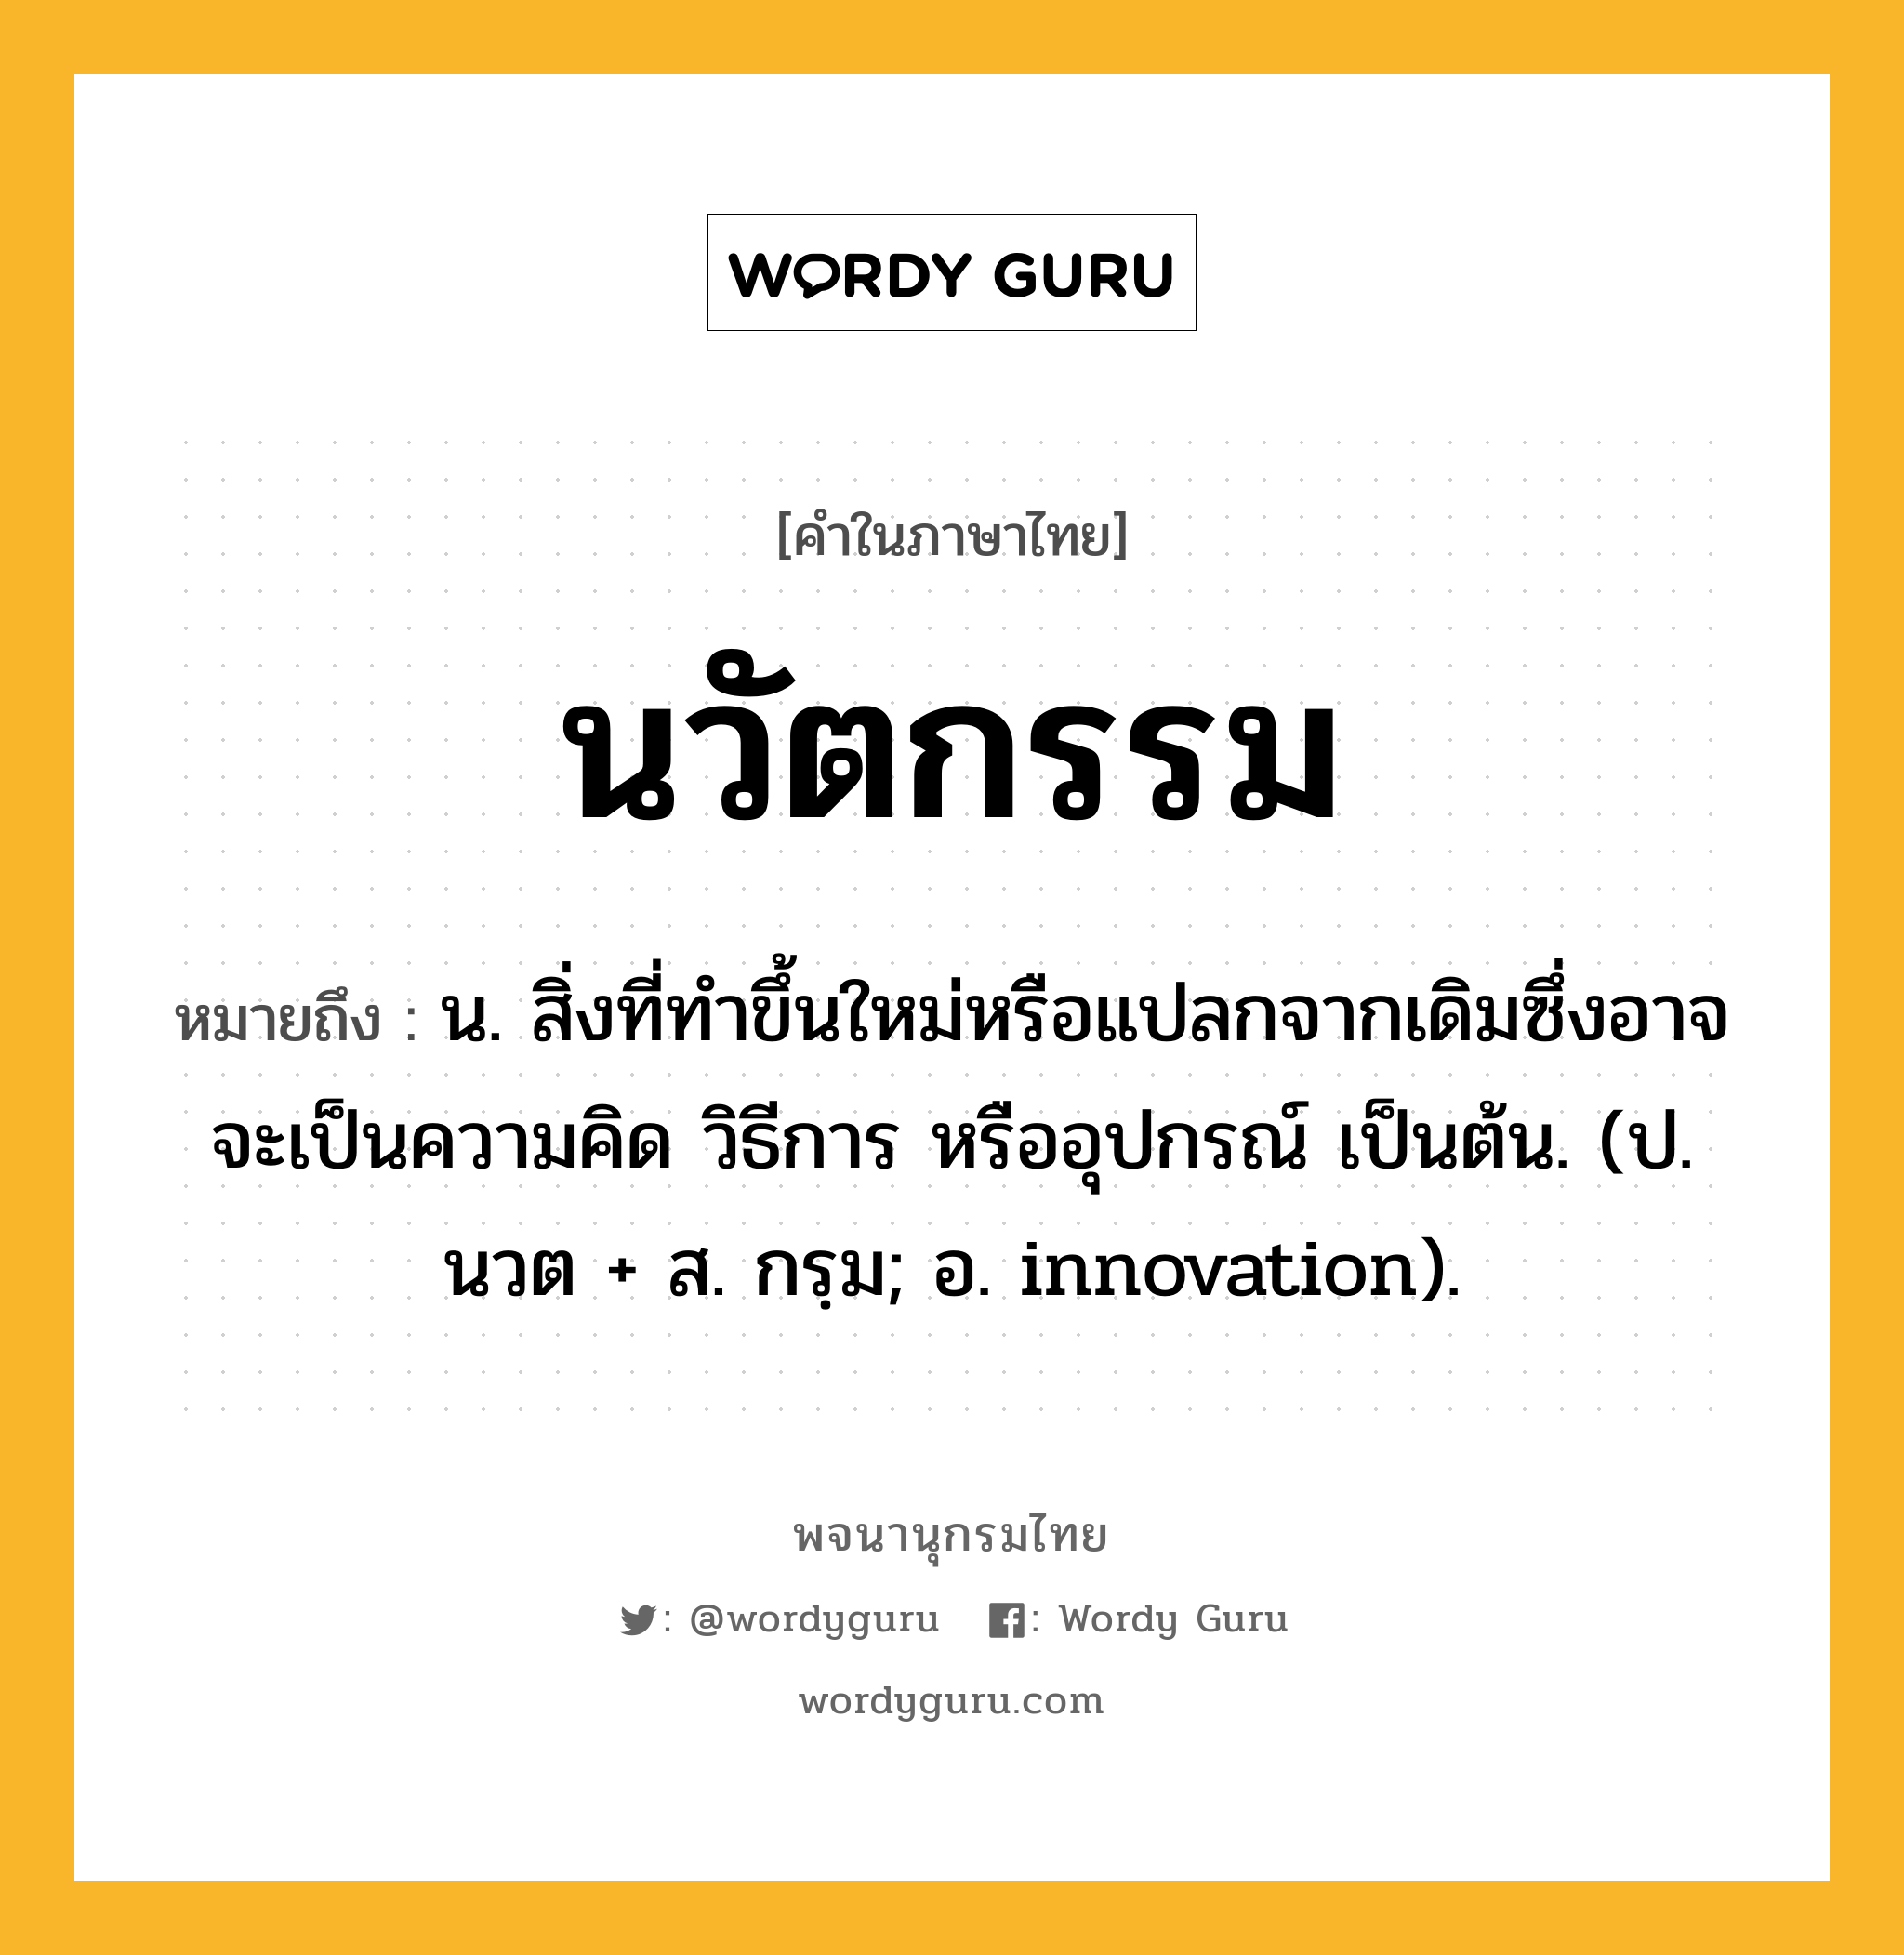 นวัตกรรม ความหมาย หมายถึงอะไร?, คำในภาษาไทย นวัตกรรม หมายถึง น. สิ่งที่ทำขึ้นใหม่หรือแปลกจากเดิมซึ่งอาจจะเป็นความคิด วิธีการ หรืออุปกรณ์ เป็นต้น. (ป. นวต + ส. กรฺม; อ. innovation).